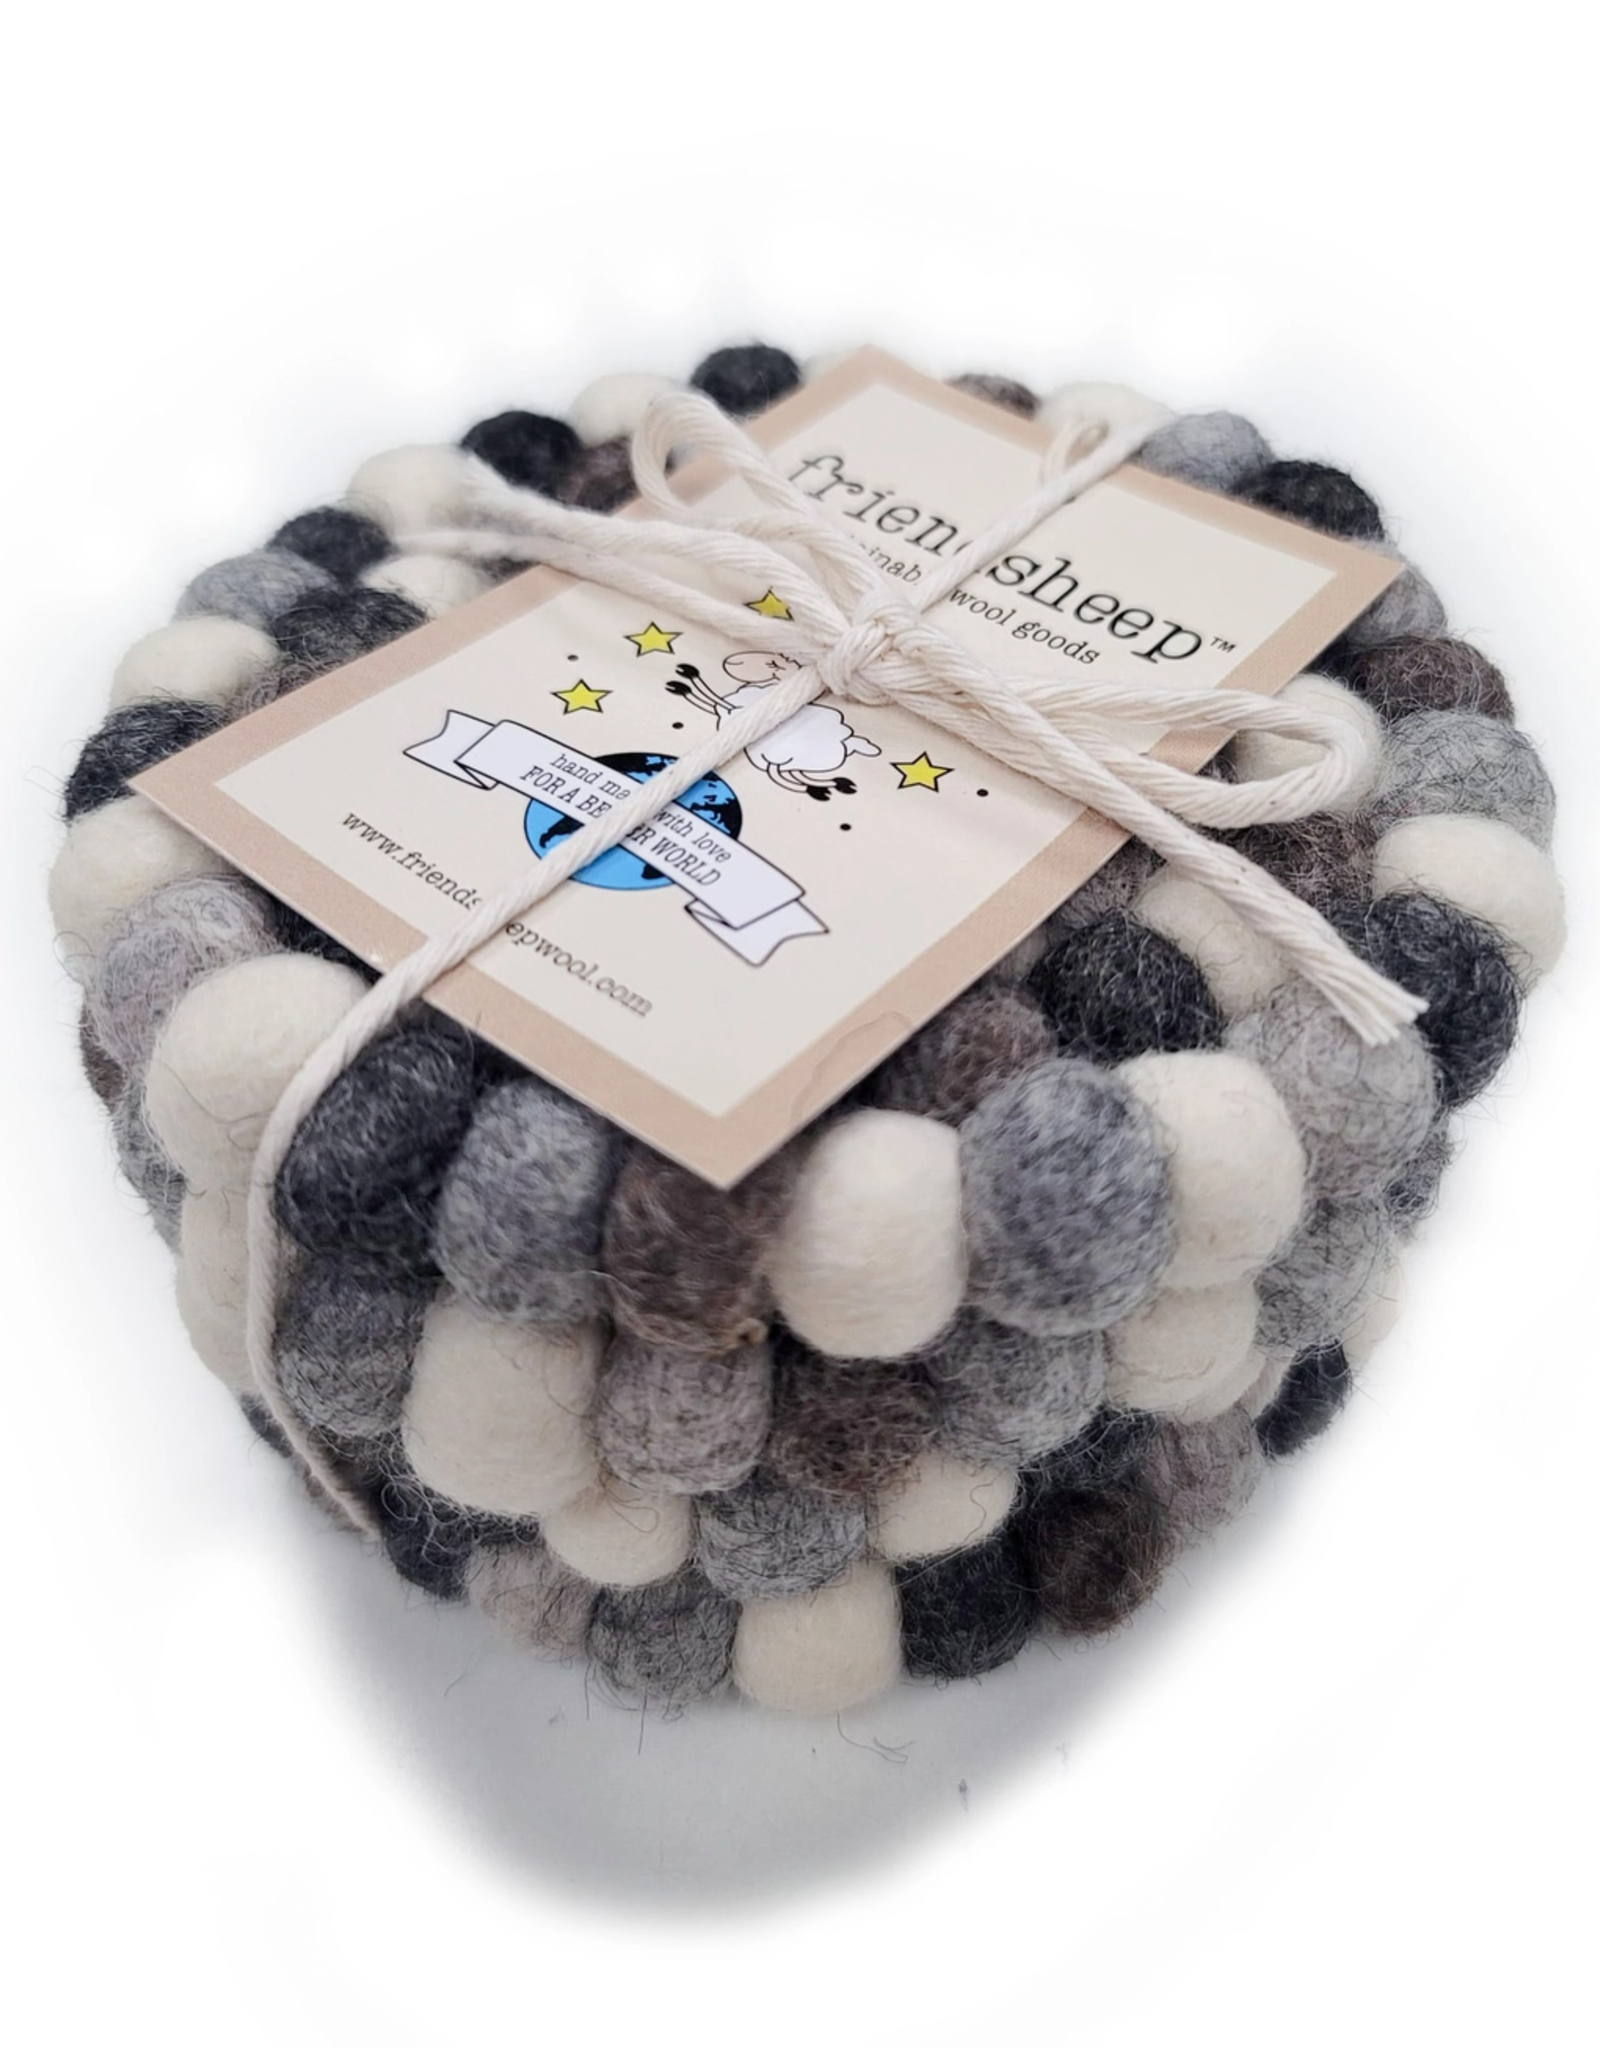 Friendsheep Wool Wool Coasters - Stone